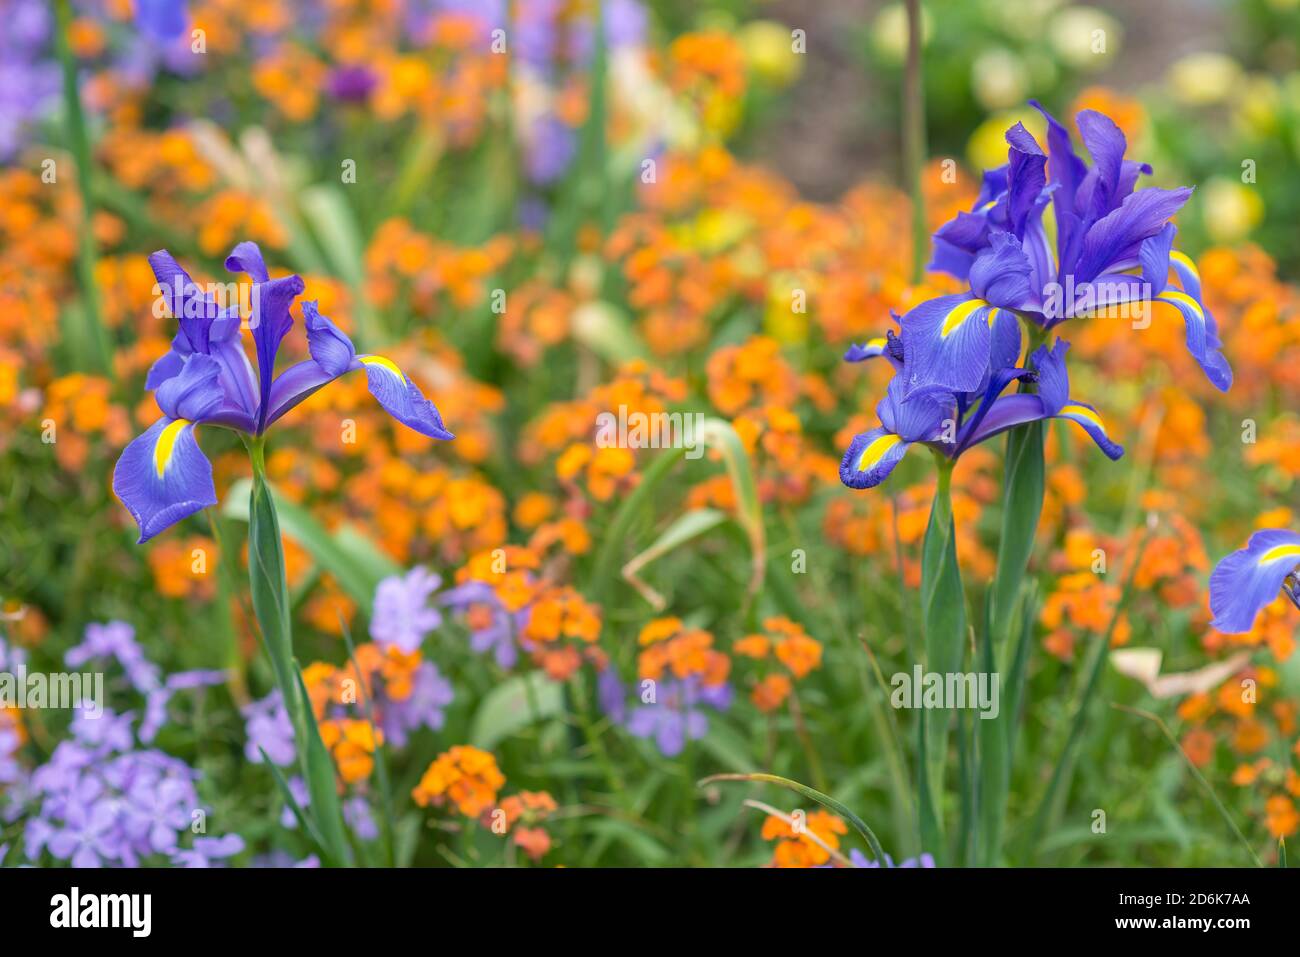 Ein Paar blaue und gelbe Iris, Iris versicolor, blüht während des Frühlings vor einem Feld von orangen und violetten Blüten. Stockfoto